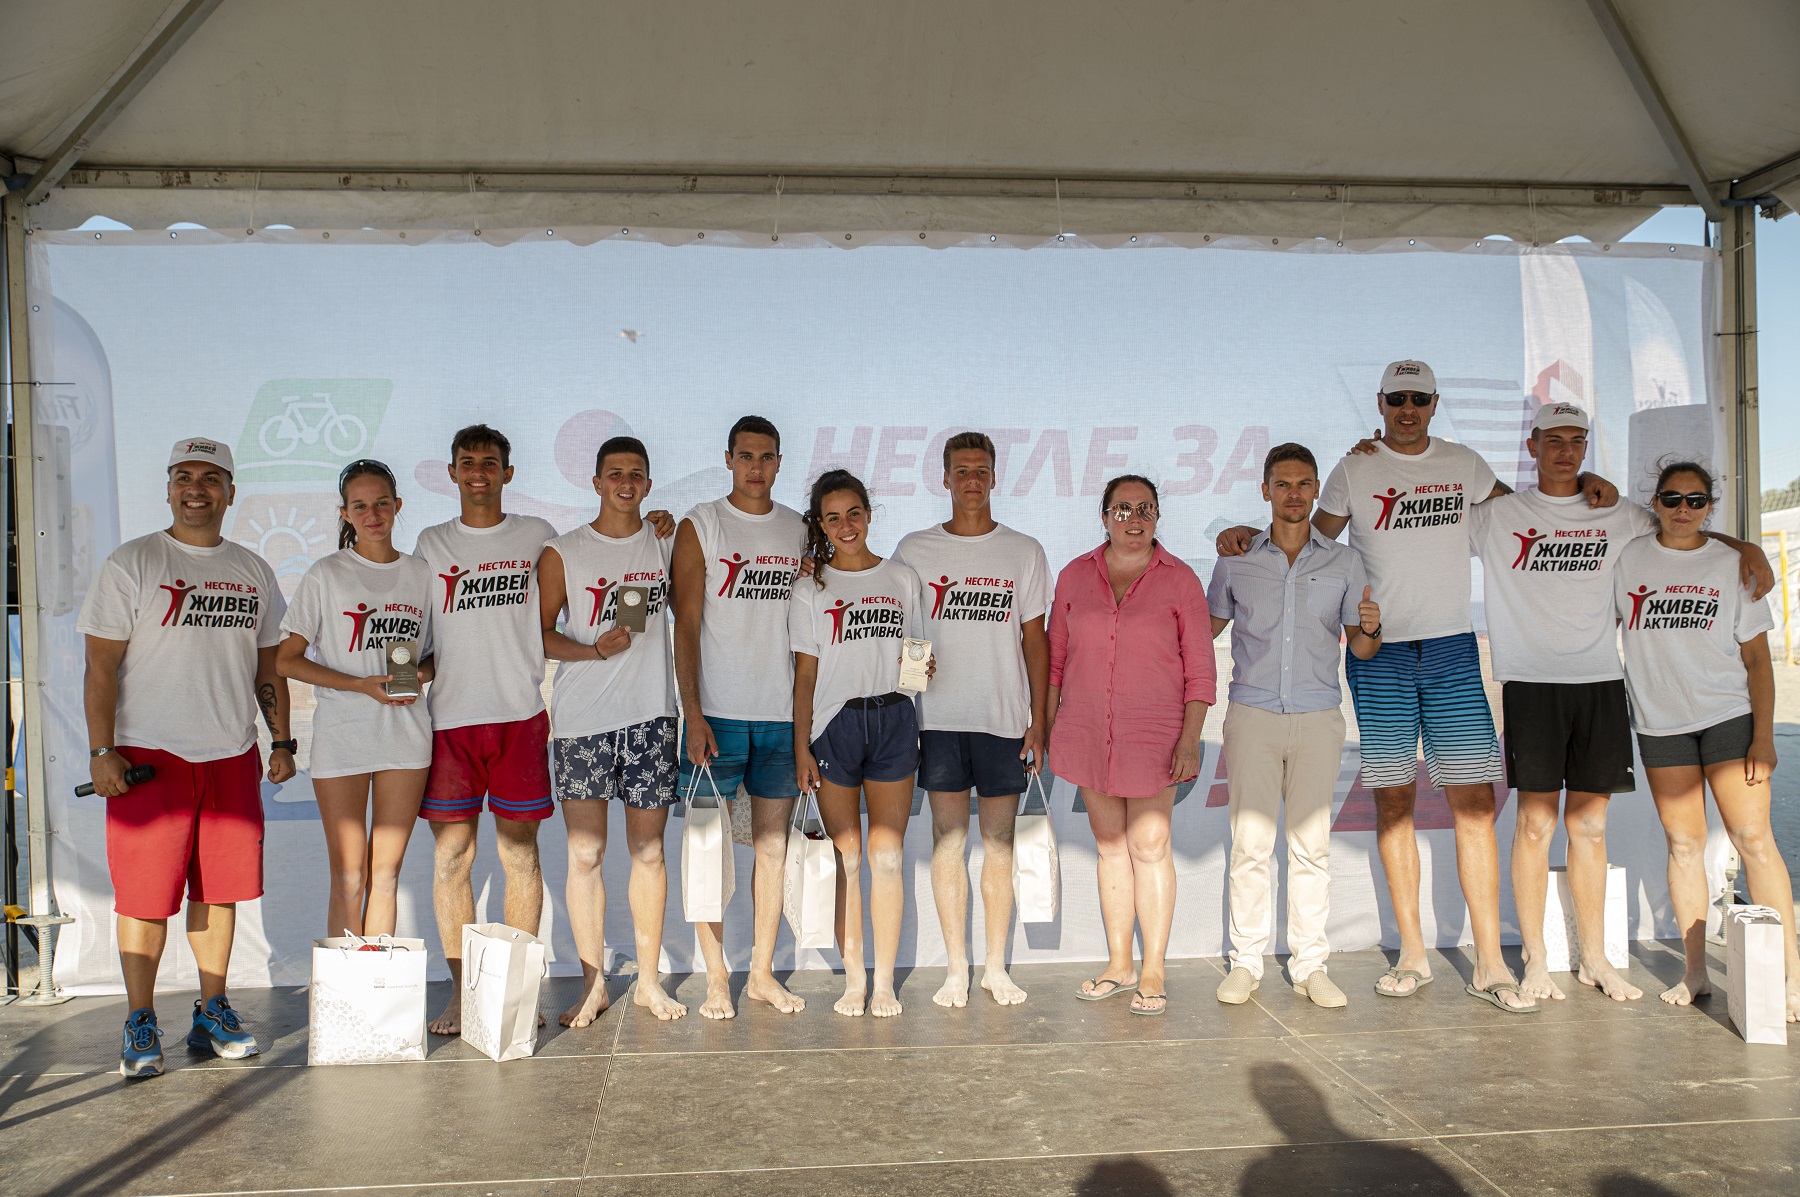 ''Нестле за Живей Активно на плажа!'' събра спортни легенди и обещаващи спортни таланти на плажа във Варна